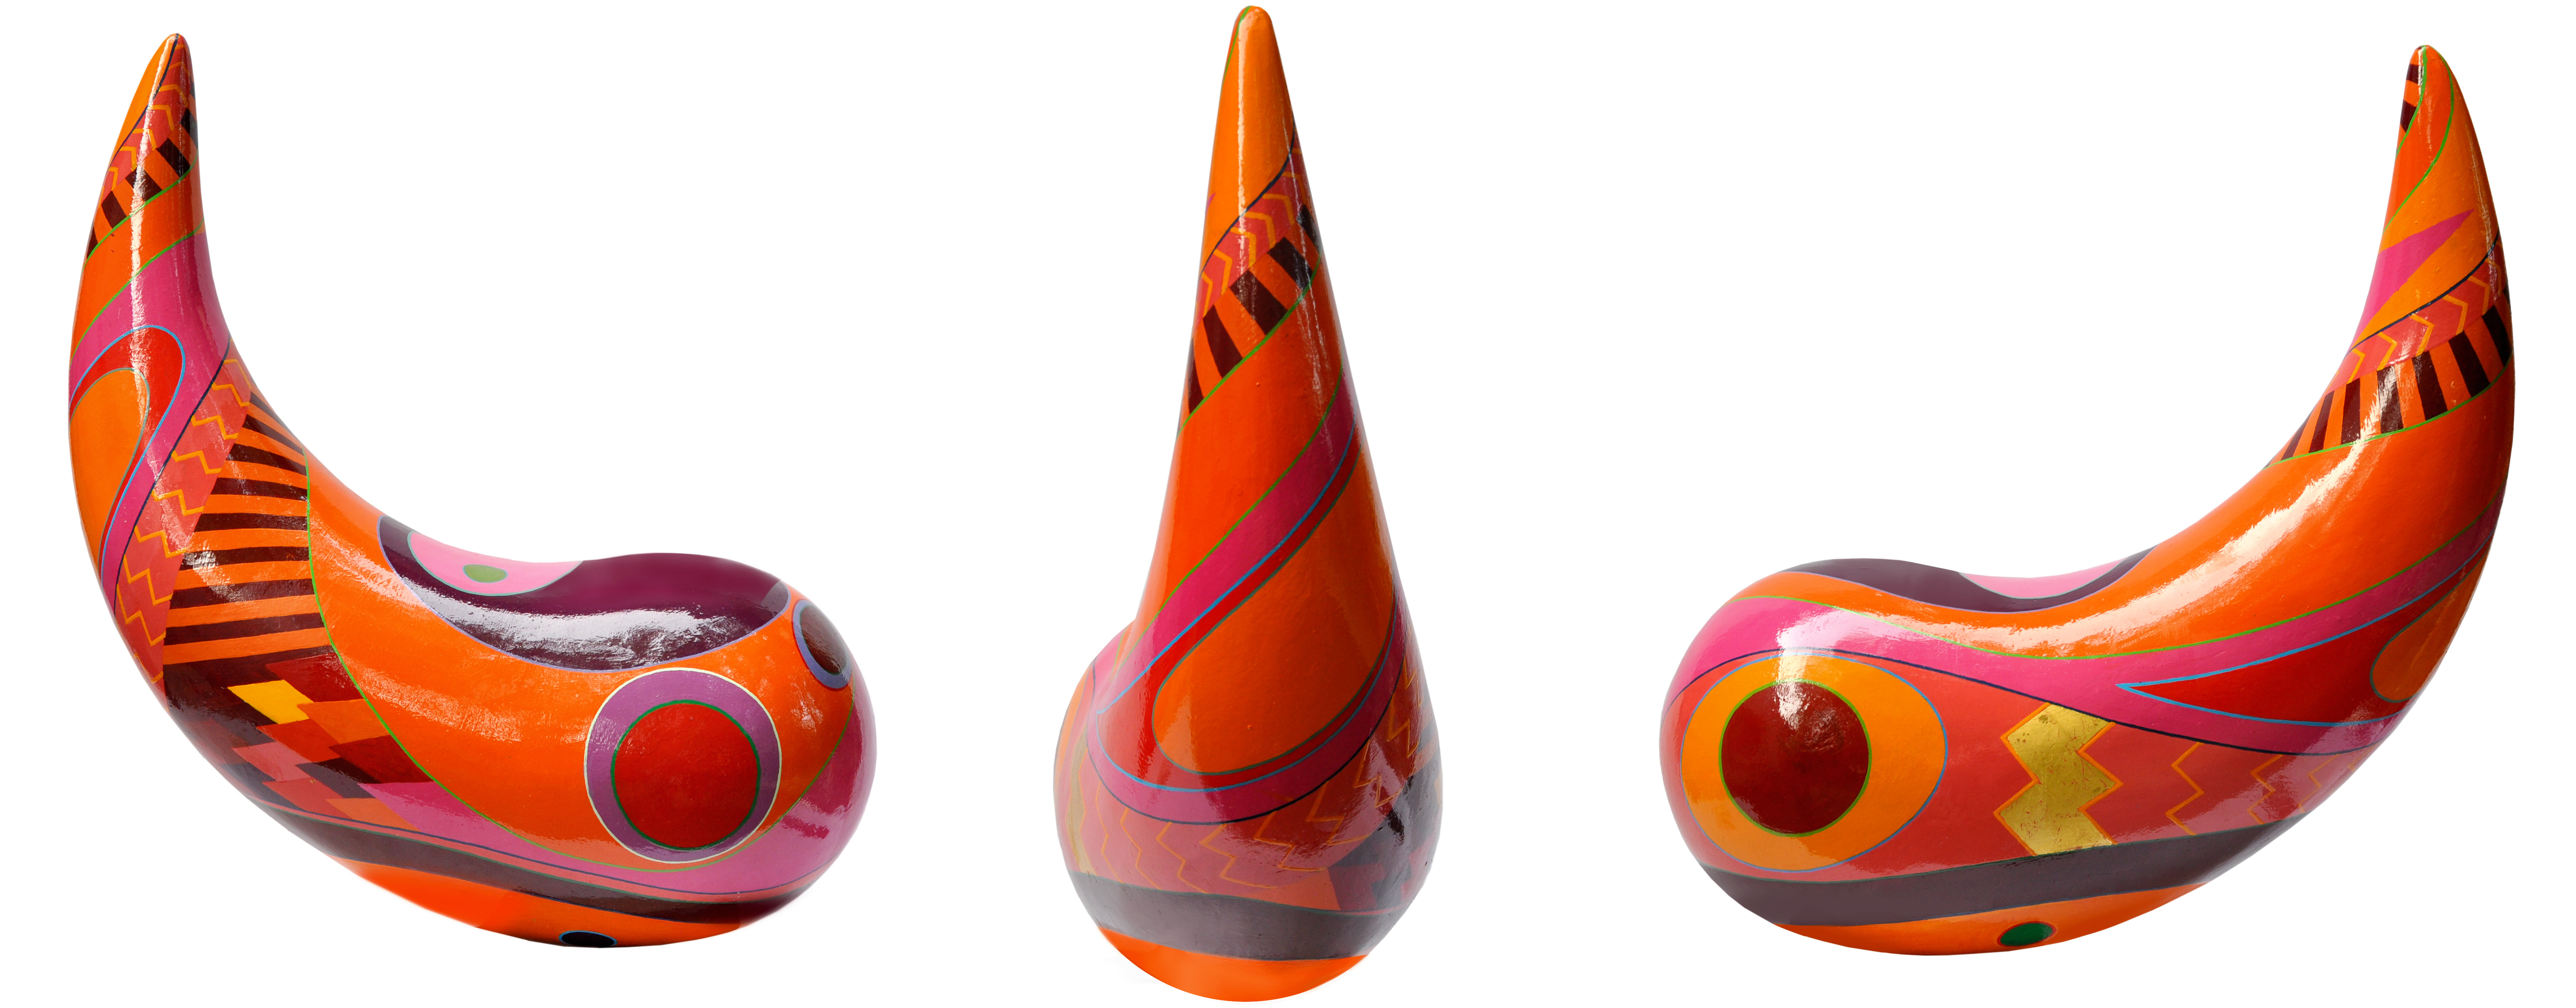 @Totomi Kunstskulpturen in farbenfrohen Orange gehaltener Yang 3 fache Abbildung